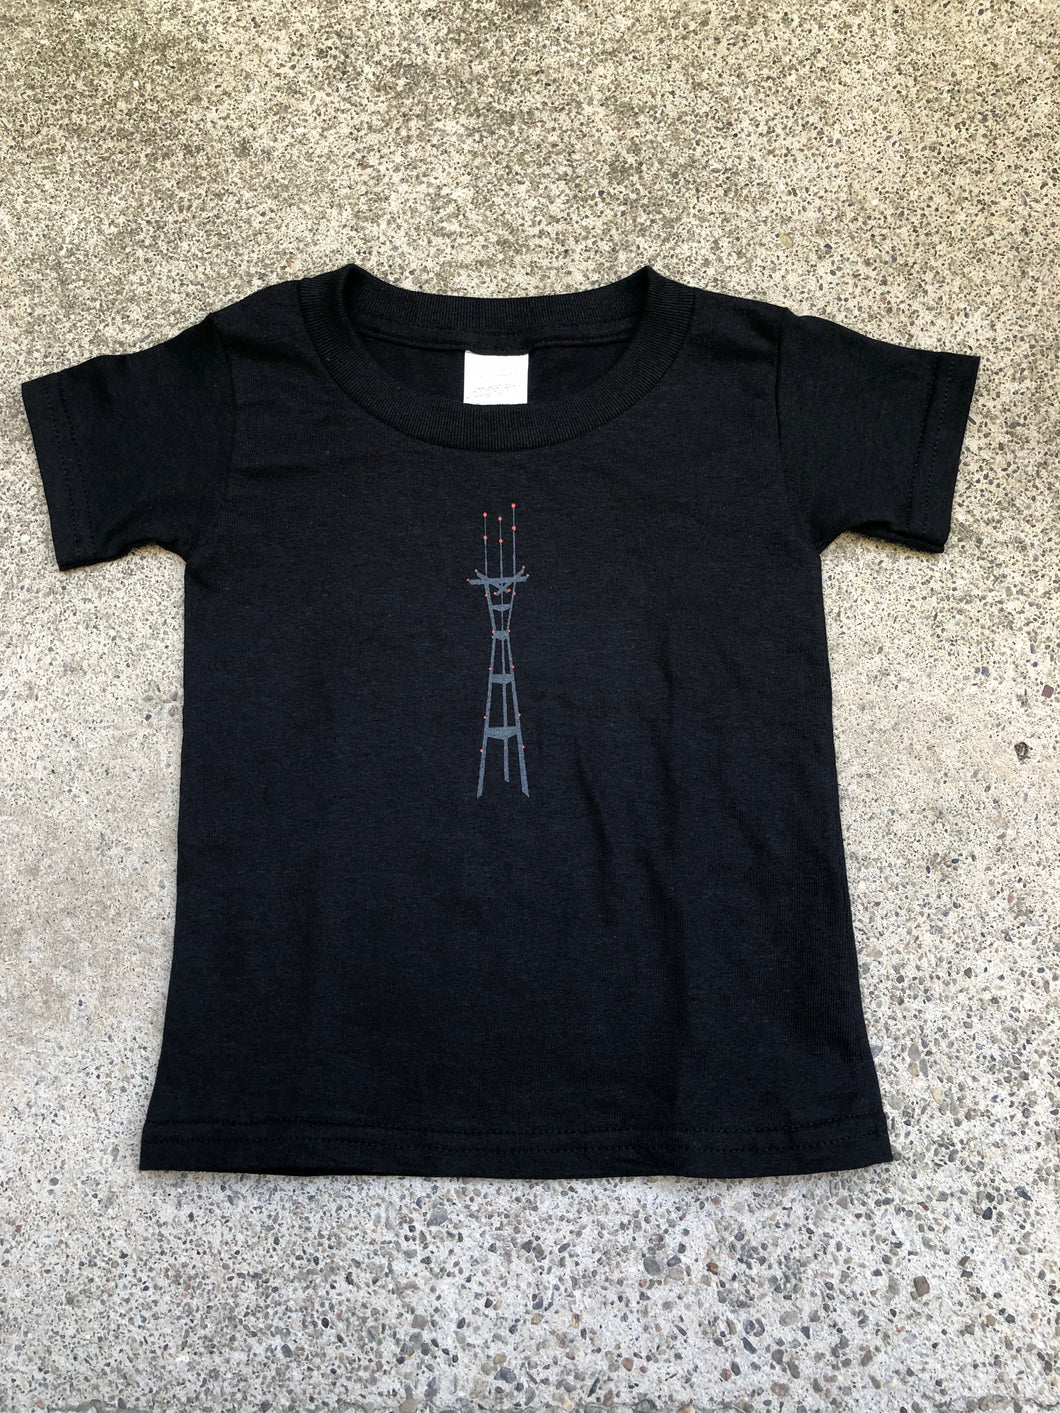 Sutro Tower at Night Kids T-shirt